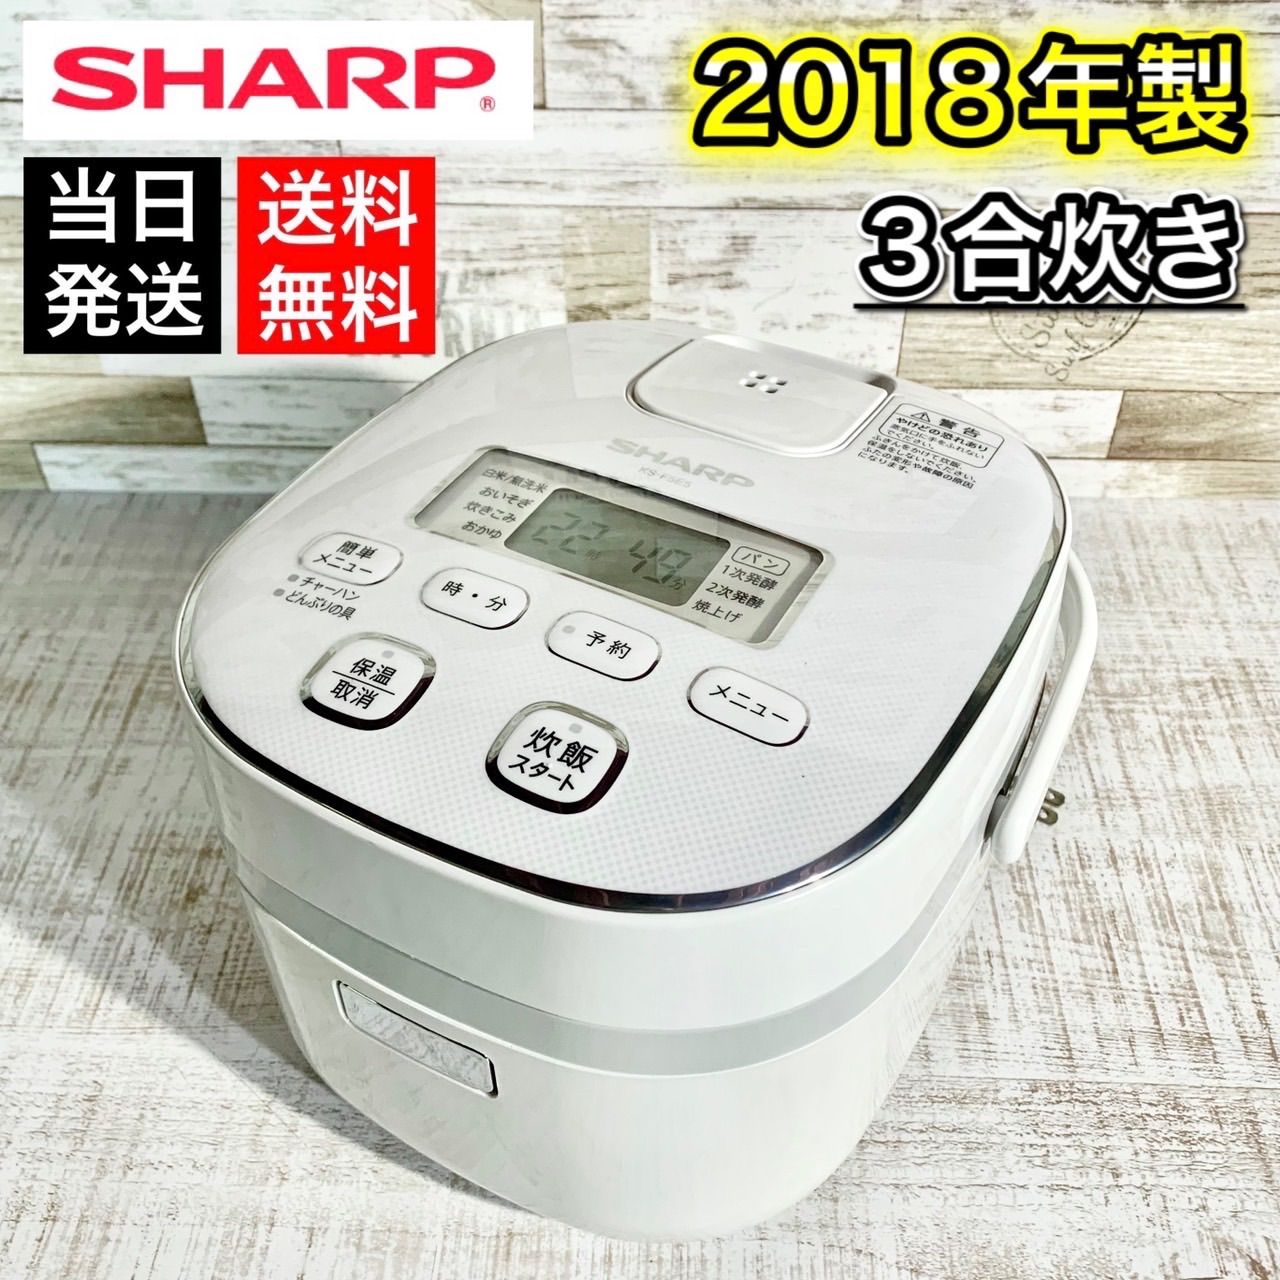 SHARP ジャー炊飯器 - 炊飯器・餅つき機